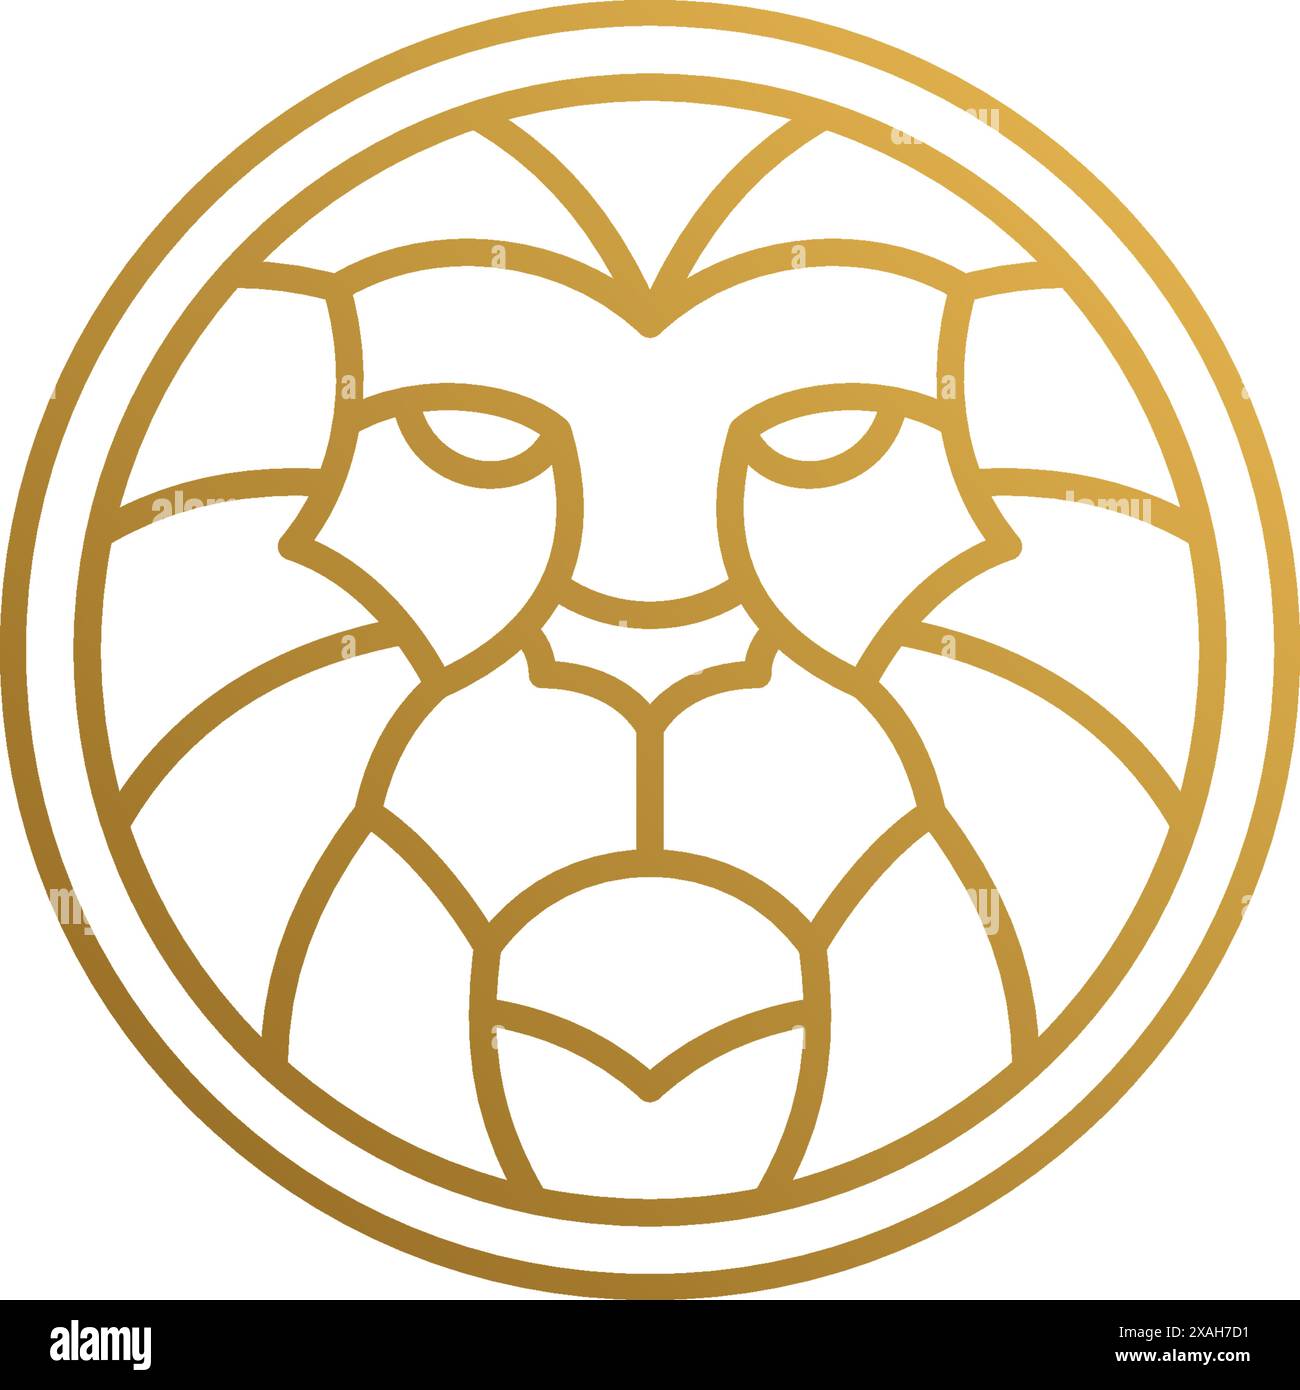 Illustrazione vettoriale minima del modello di design del logo in stile lineare di forma rotonda con testa di leone geometrica dorata come predatore aggressivo dell'apice Illustrazione Vettoriale